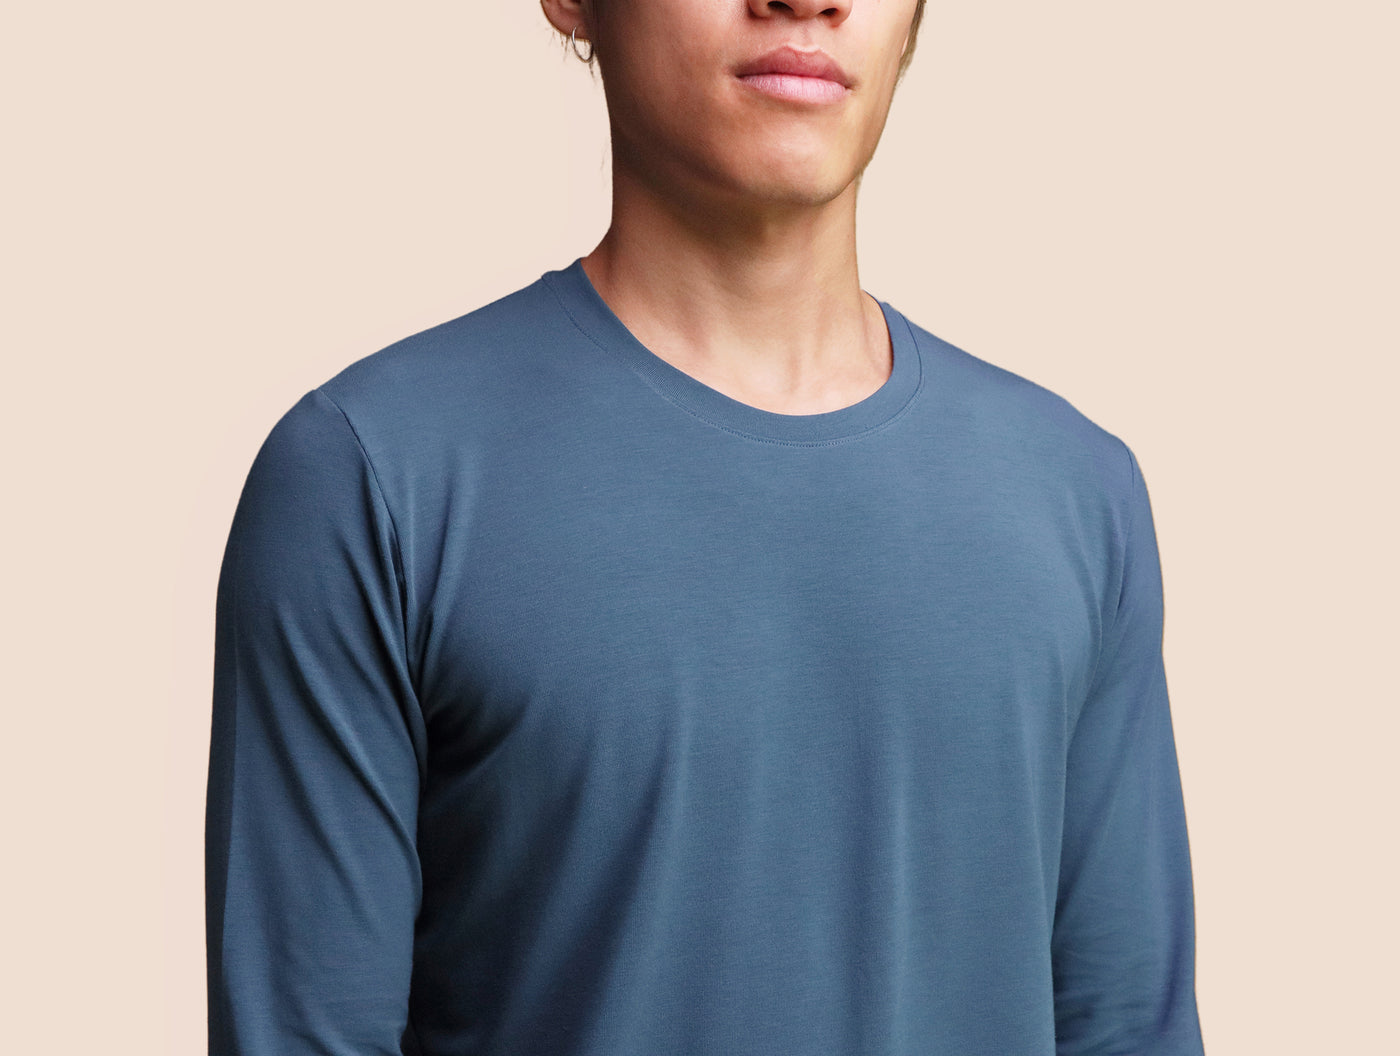 Pétrone T-shirt manches longues coton pima micromodal bleu céruléen homme#couleur_bleu-céruléen